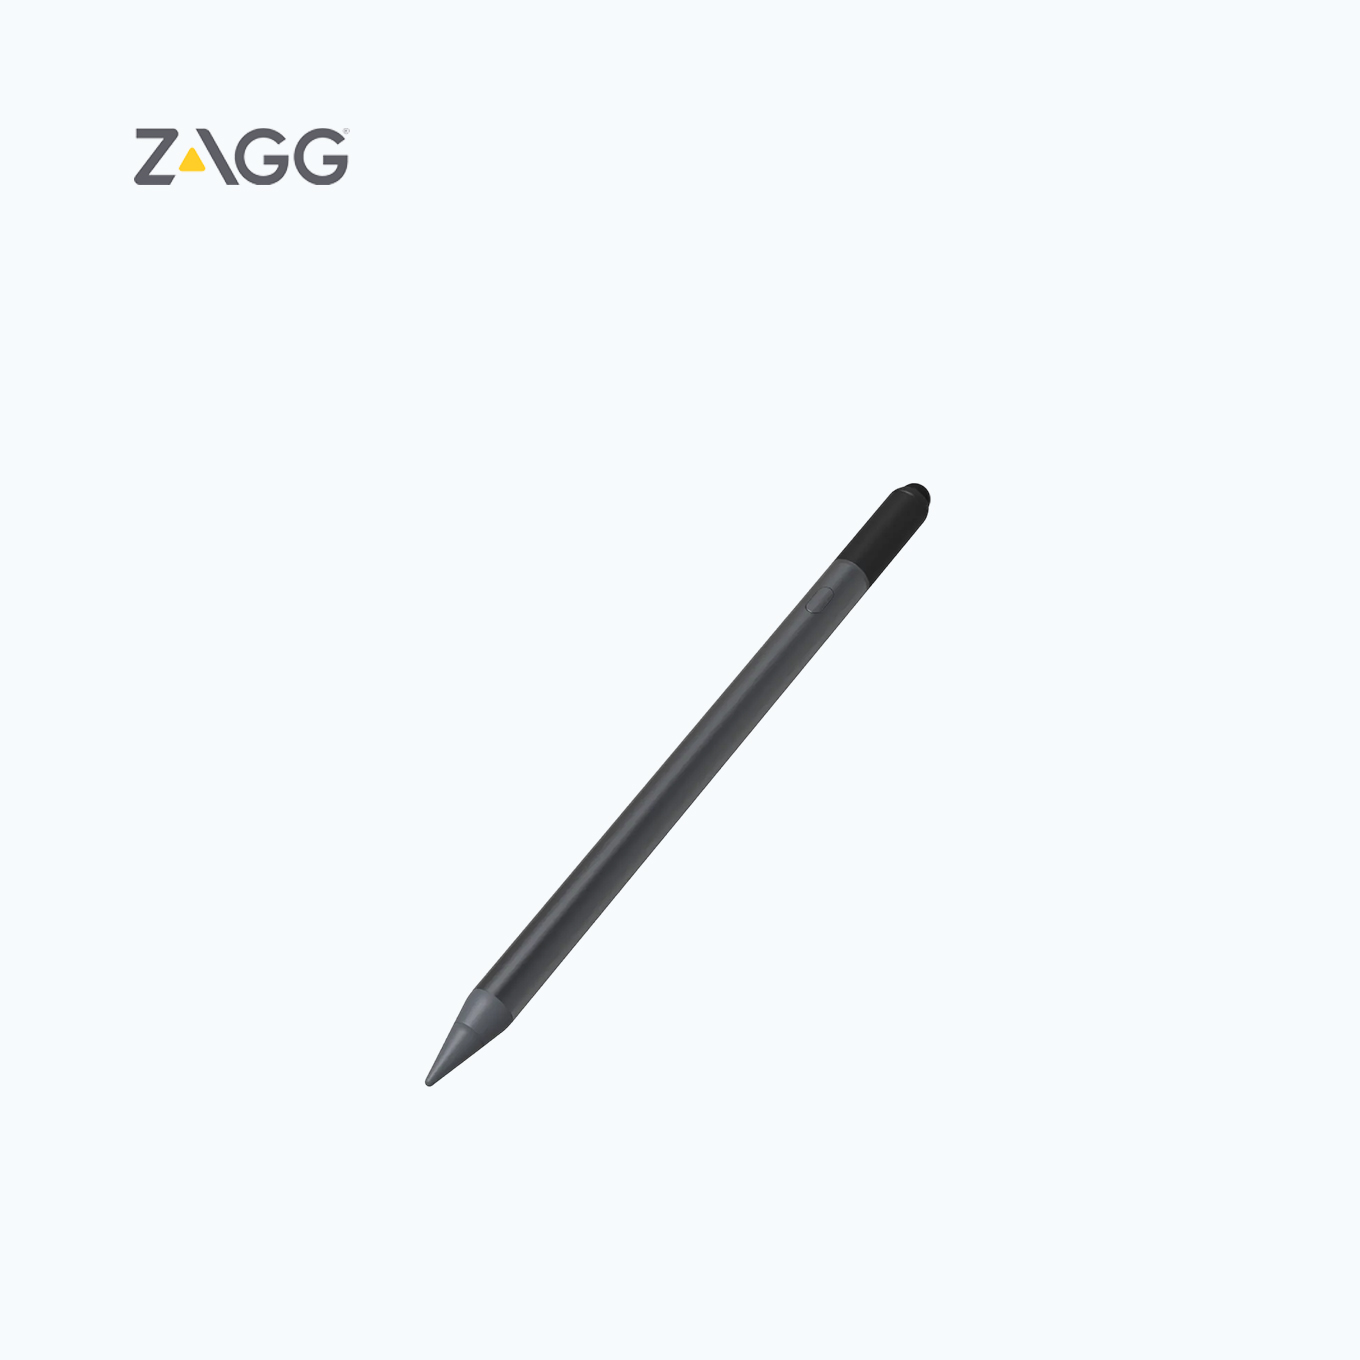 ZAGG Pro Stylus 2 - ZAGG